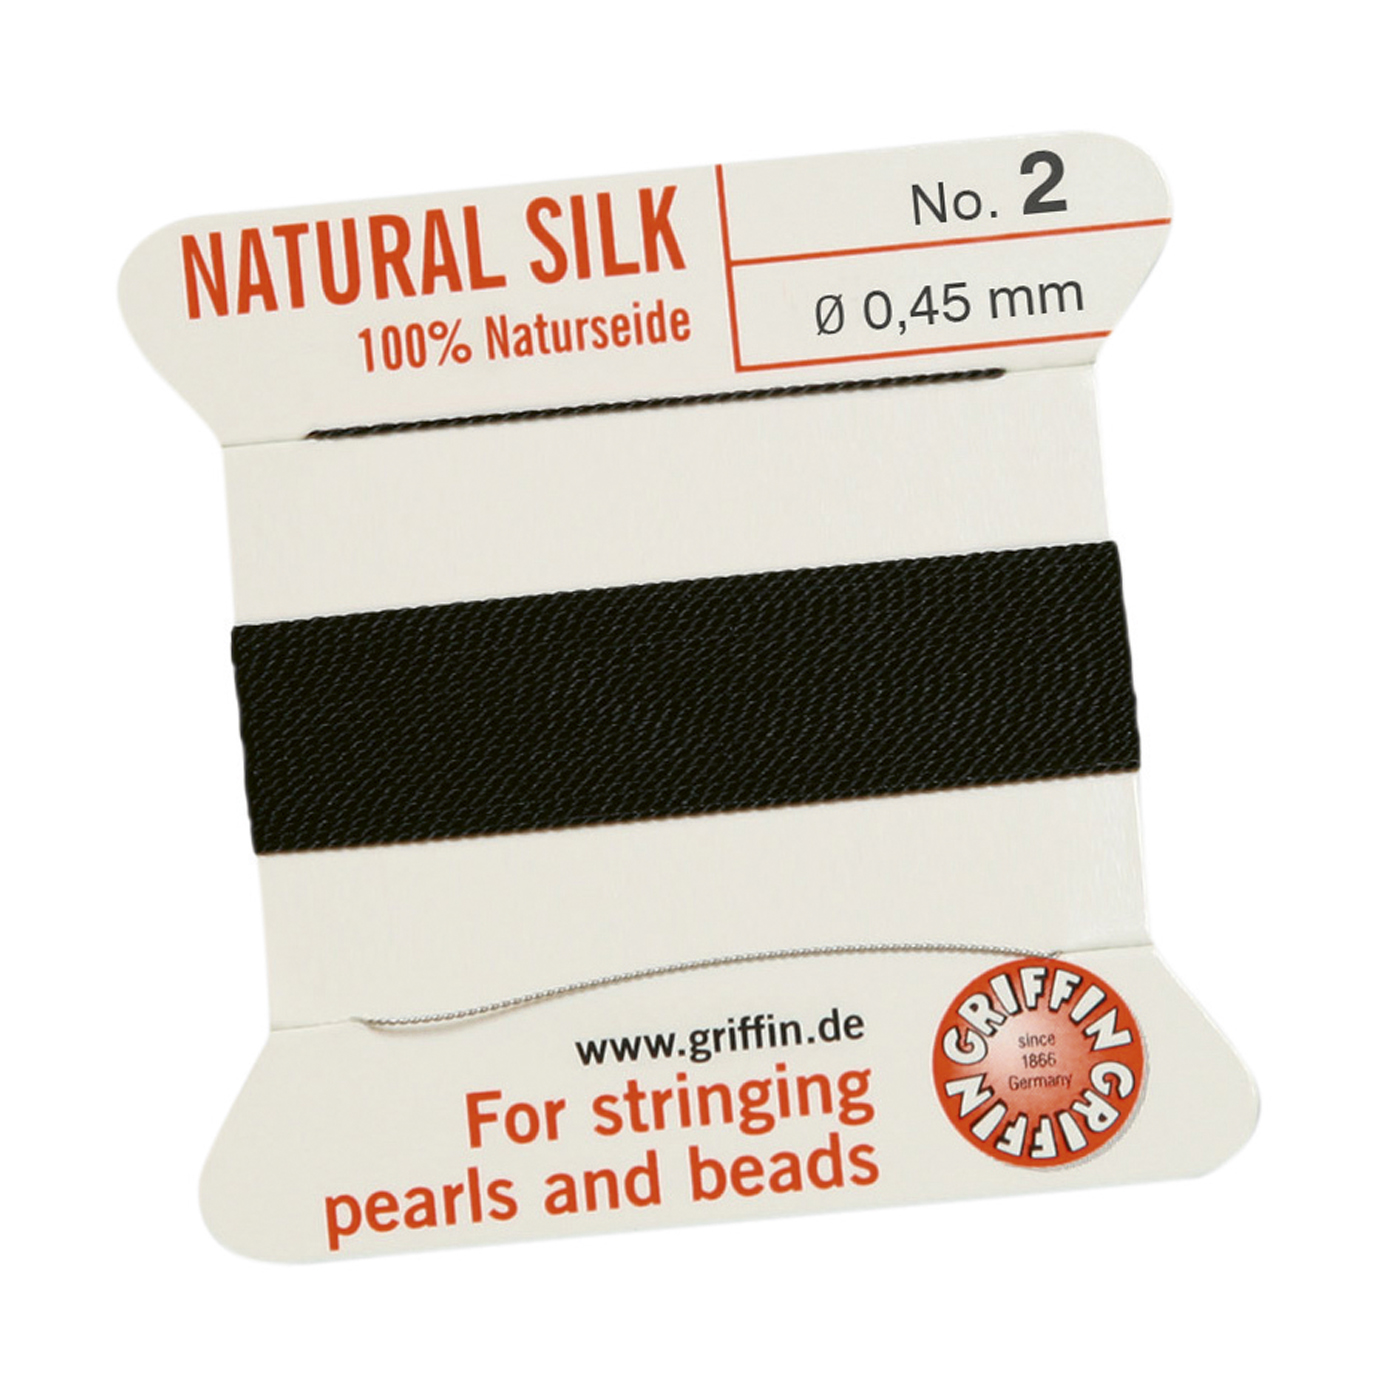 Bead Cord 100% Natural Silk, Black, No. 2 - 2 m